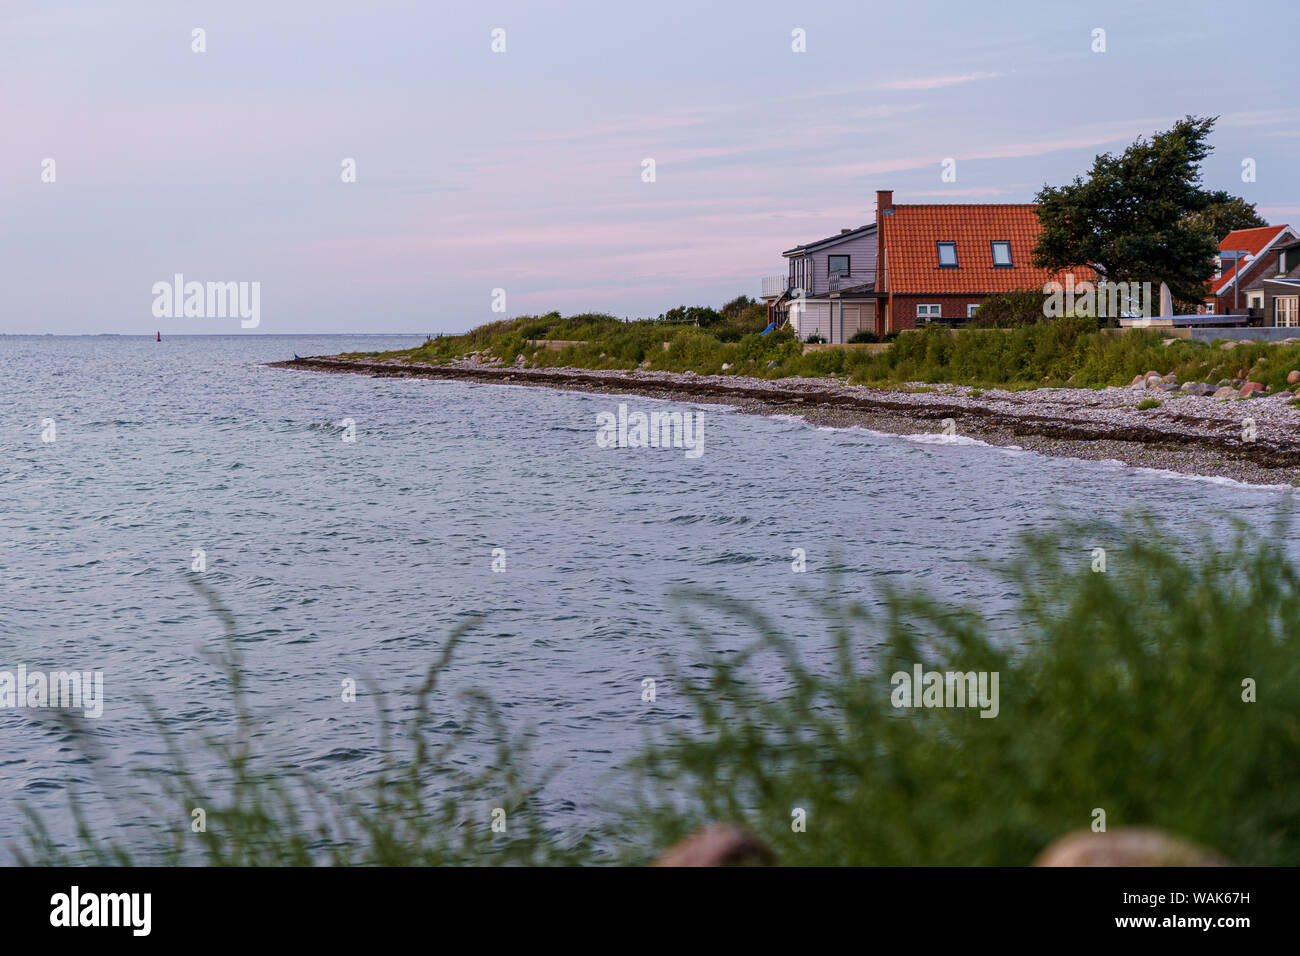 Soirée à la maison de plage sur la côte donnant sur la mer Baltique Banque D'Images